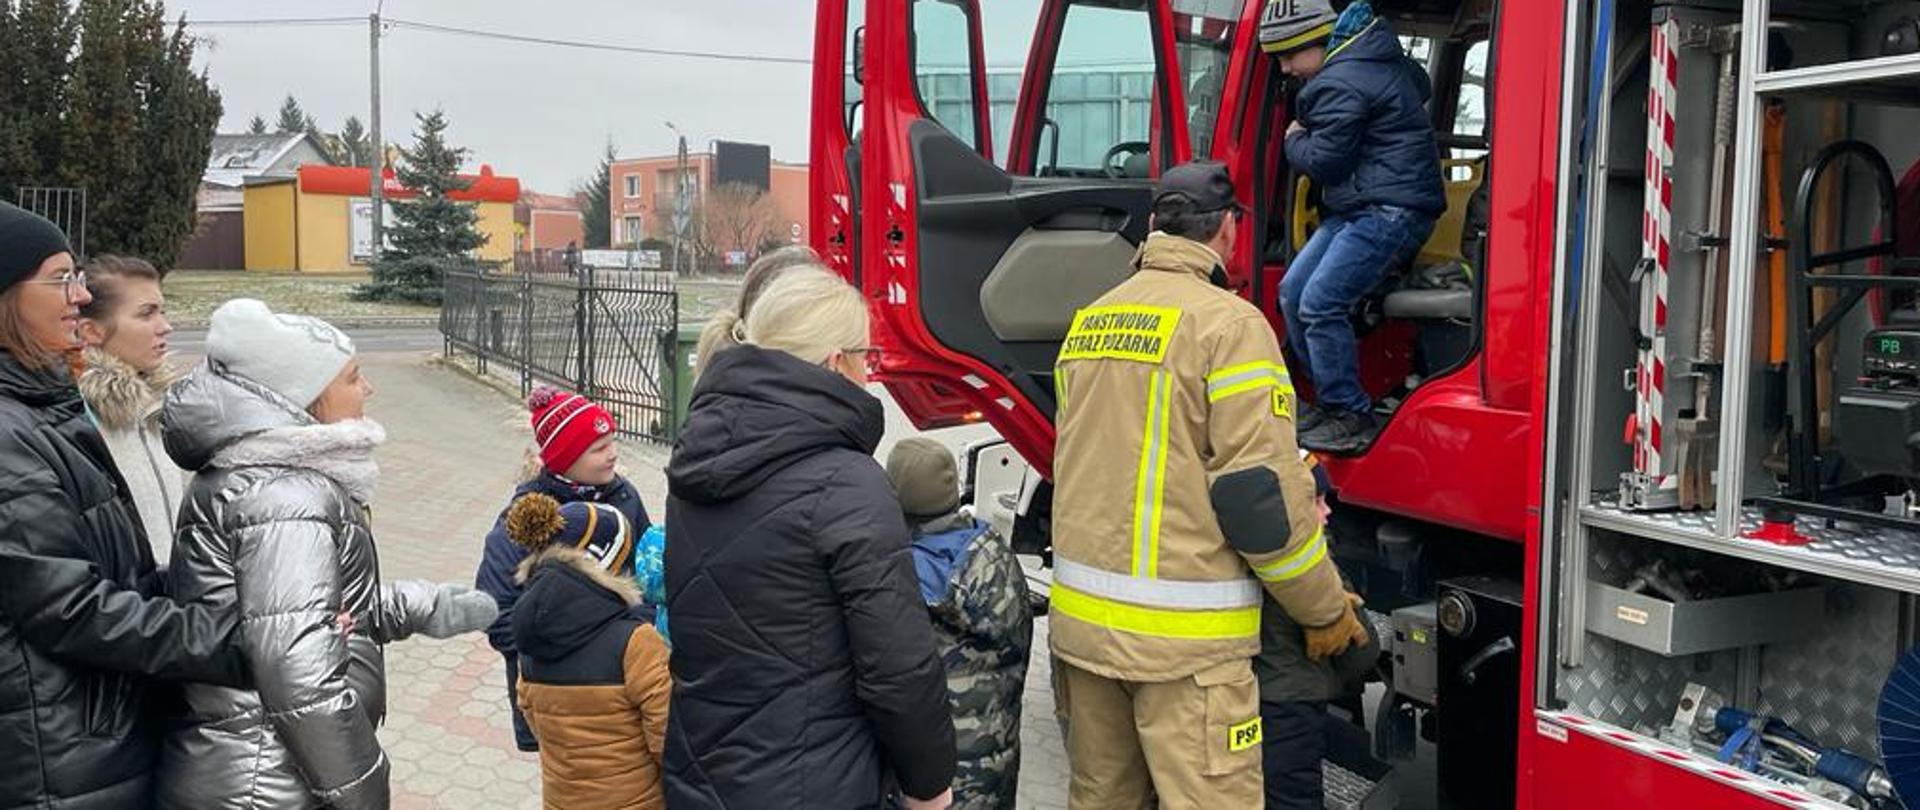 Dzieci stoją obok czerwonego, ciężarowego samochodu pożarniczego. Drzwi do samochodu sa otwarte. Jednemu z dzieci strażak pomaga wyjść z kabiny.